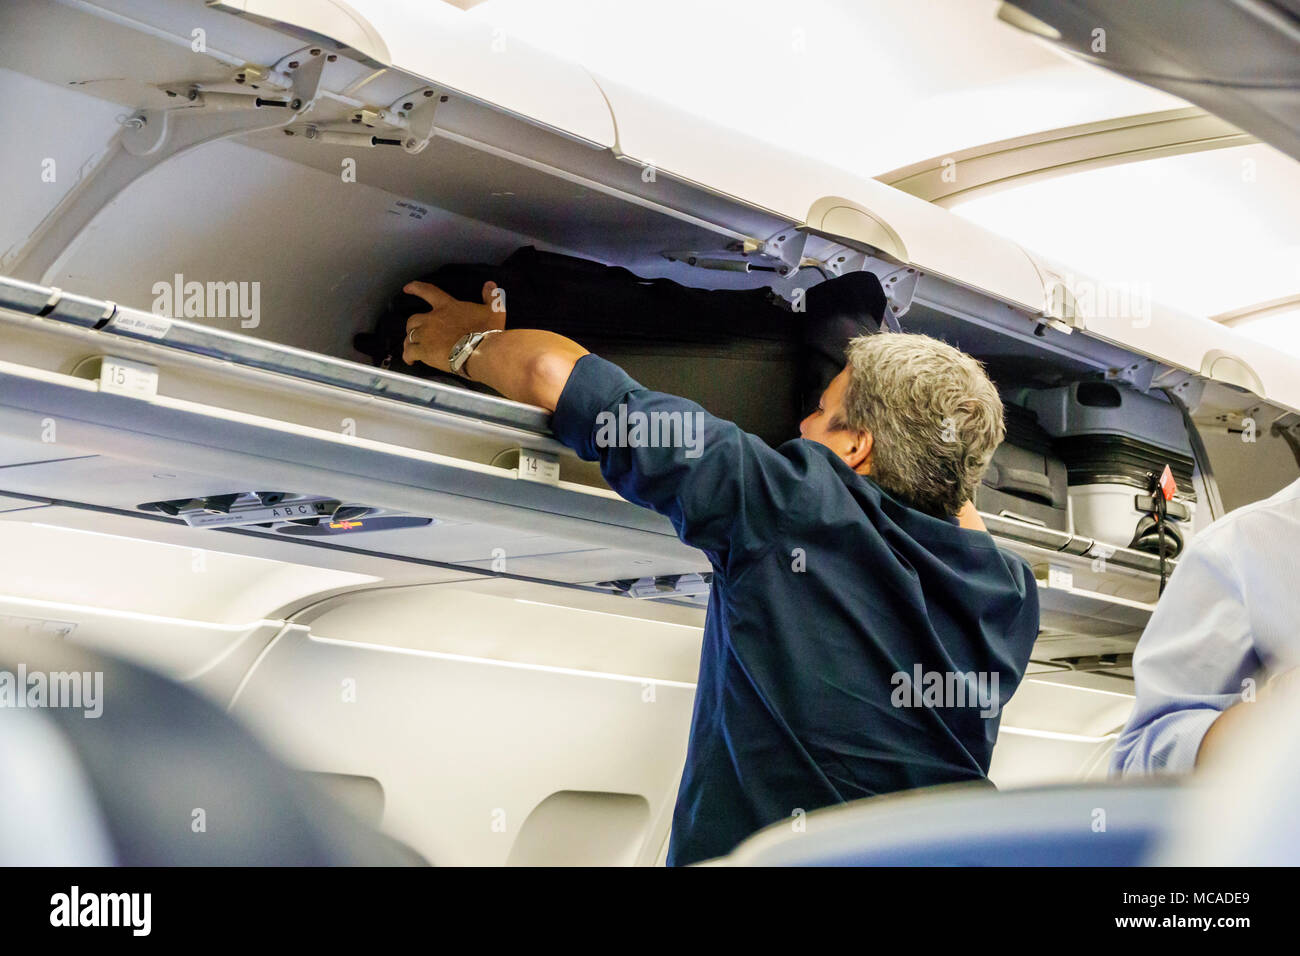 Miami Florida,Aeroporto Internazionale mia,cabina aereo,bagagli a mano a mano aperti valigie valigie valigie compartimenti cabina,sopra l Foto Stock